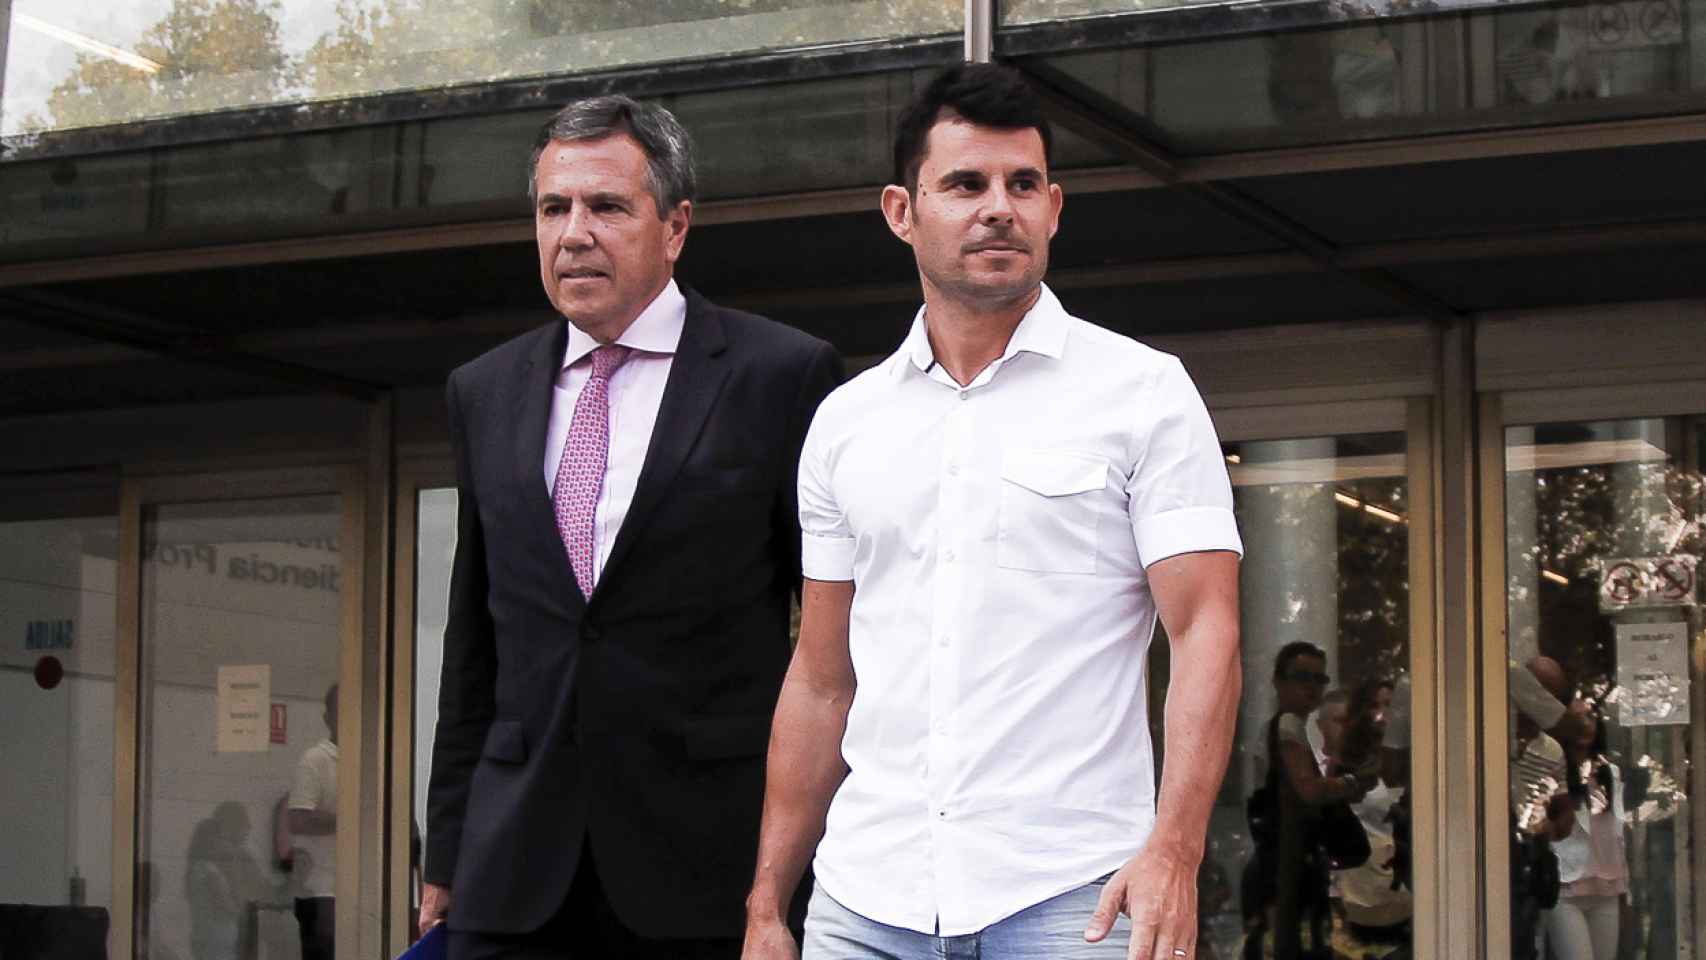 Fernando Osuna y Javier Santos saliendo del juzgado de Valencia donde se está investigando su demanda de paternidad contra Julio Iglesias.